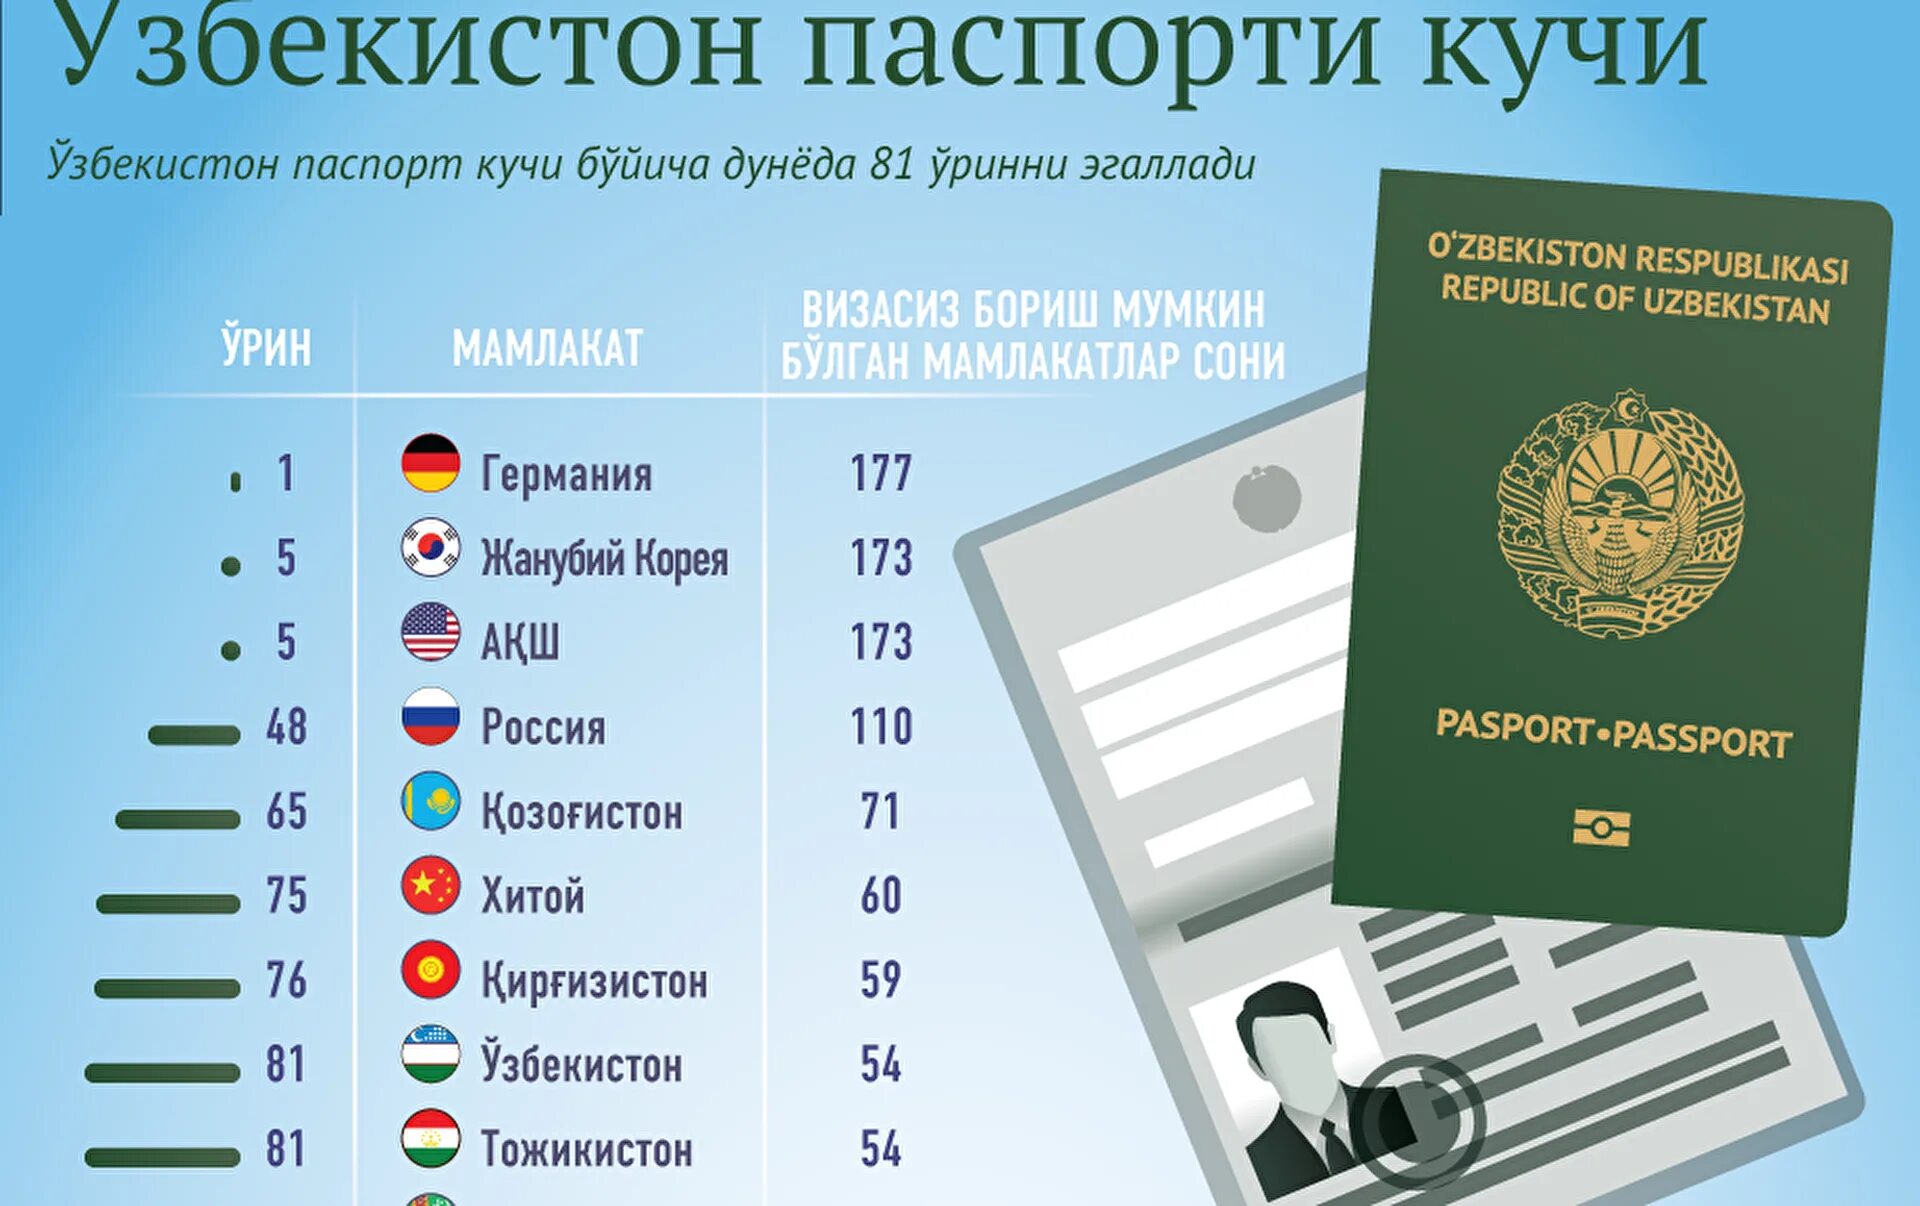 Виза для граждан Узбекистана. Безвизовые страны для граждан Узбекистана.